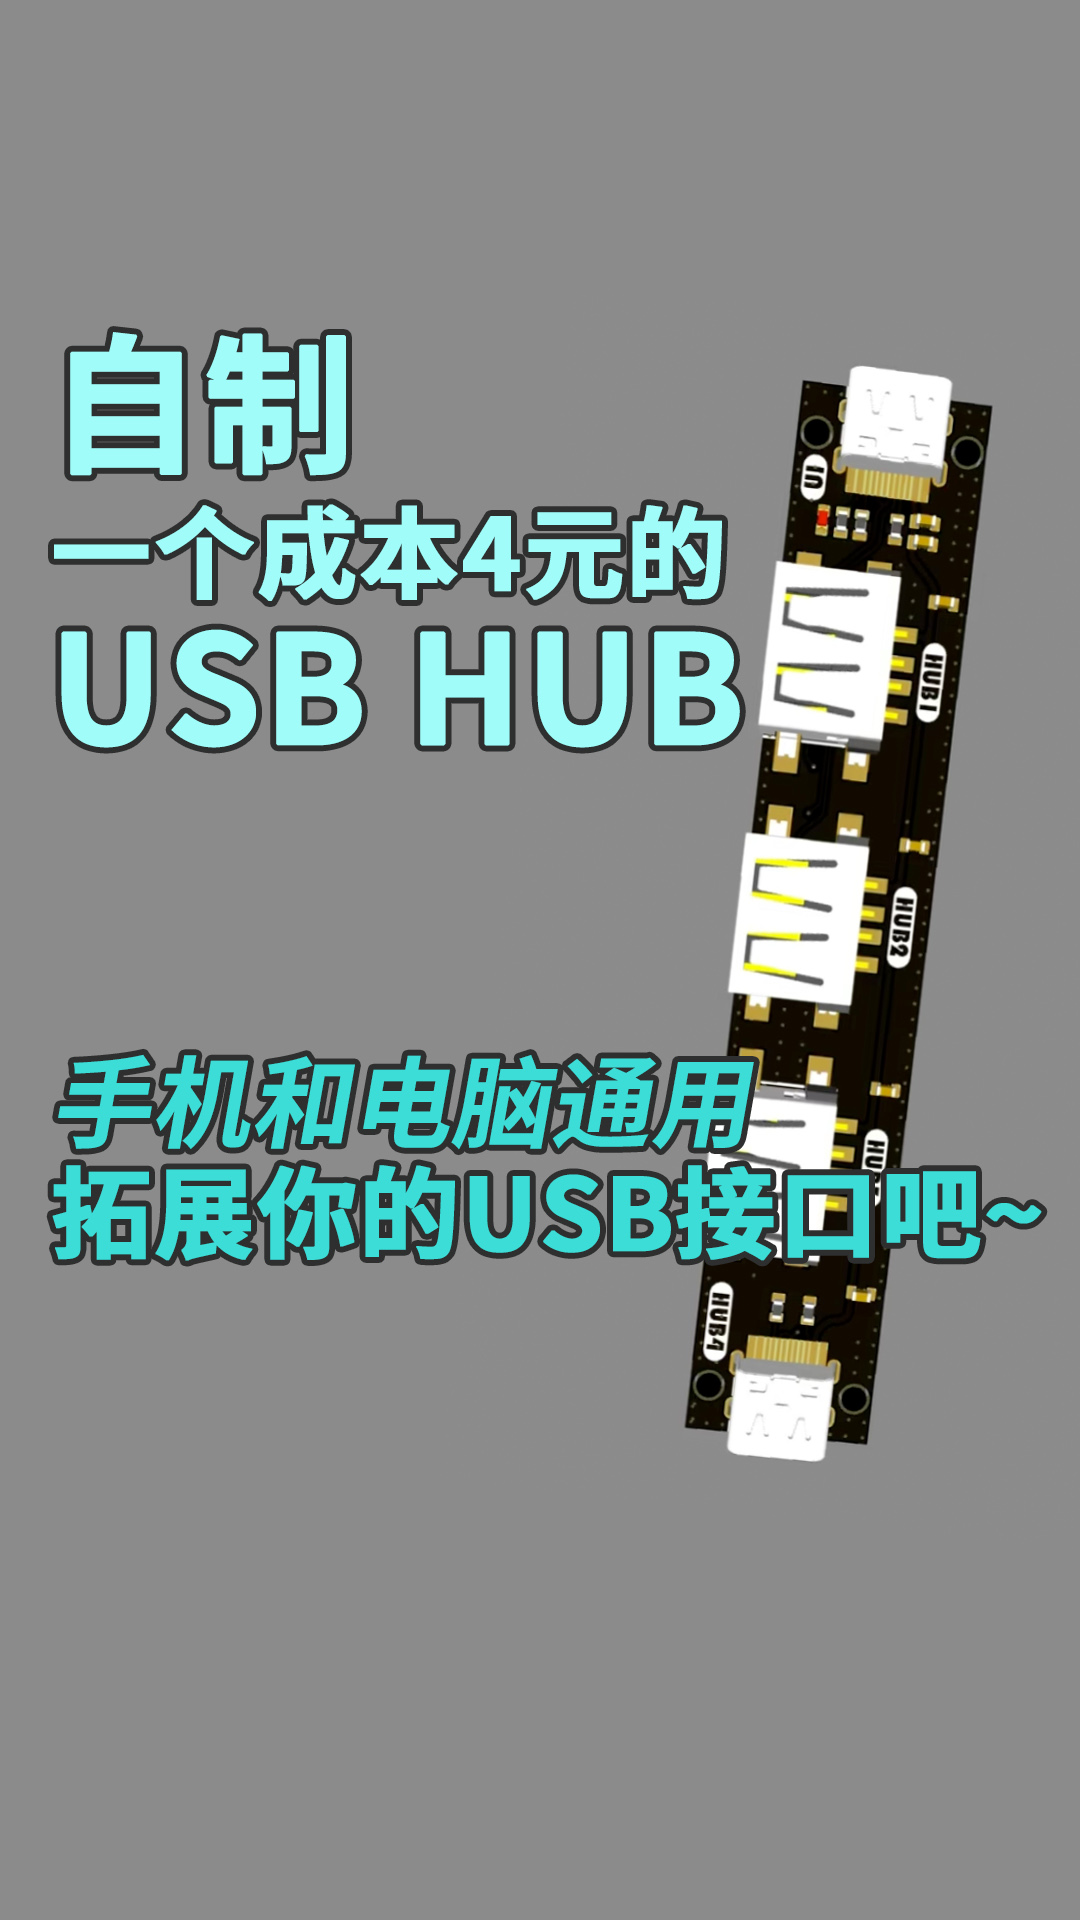 自制一個成本4元的USB HUB，手機和電腦通用，拓展你的USB接口吧~